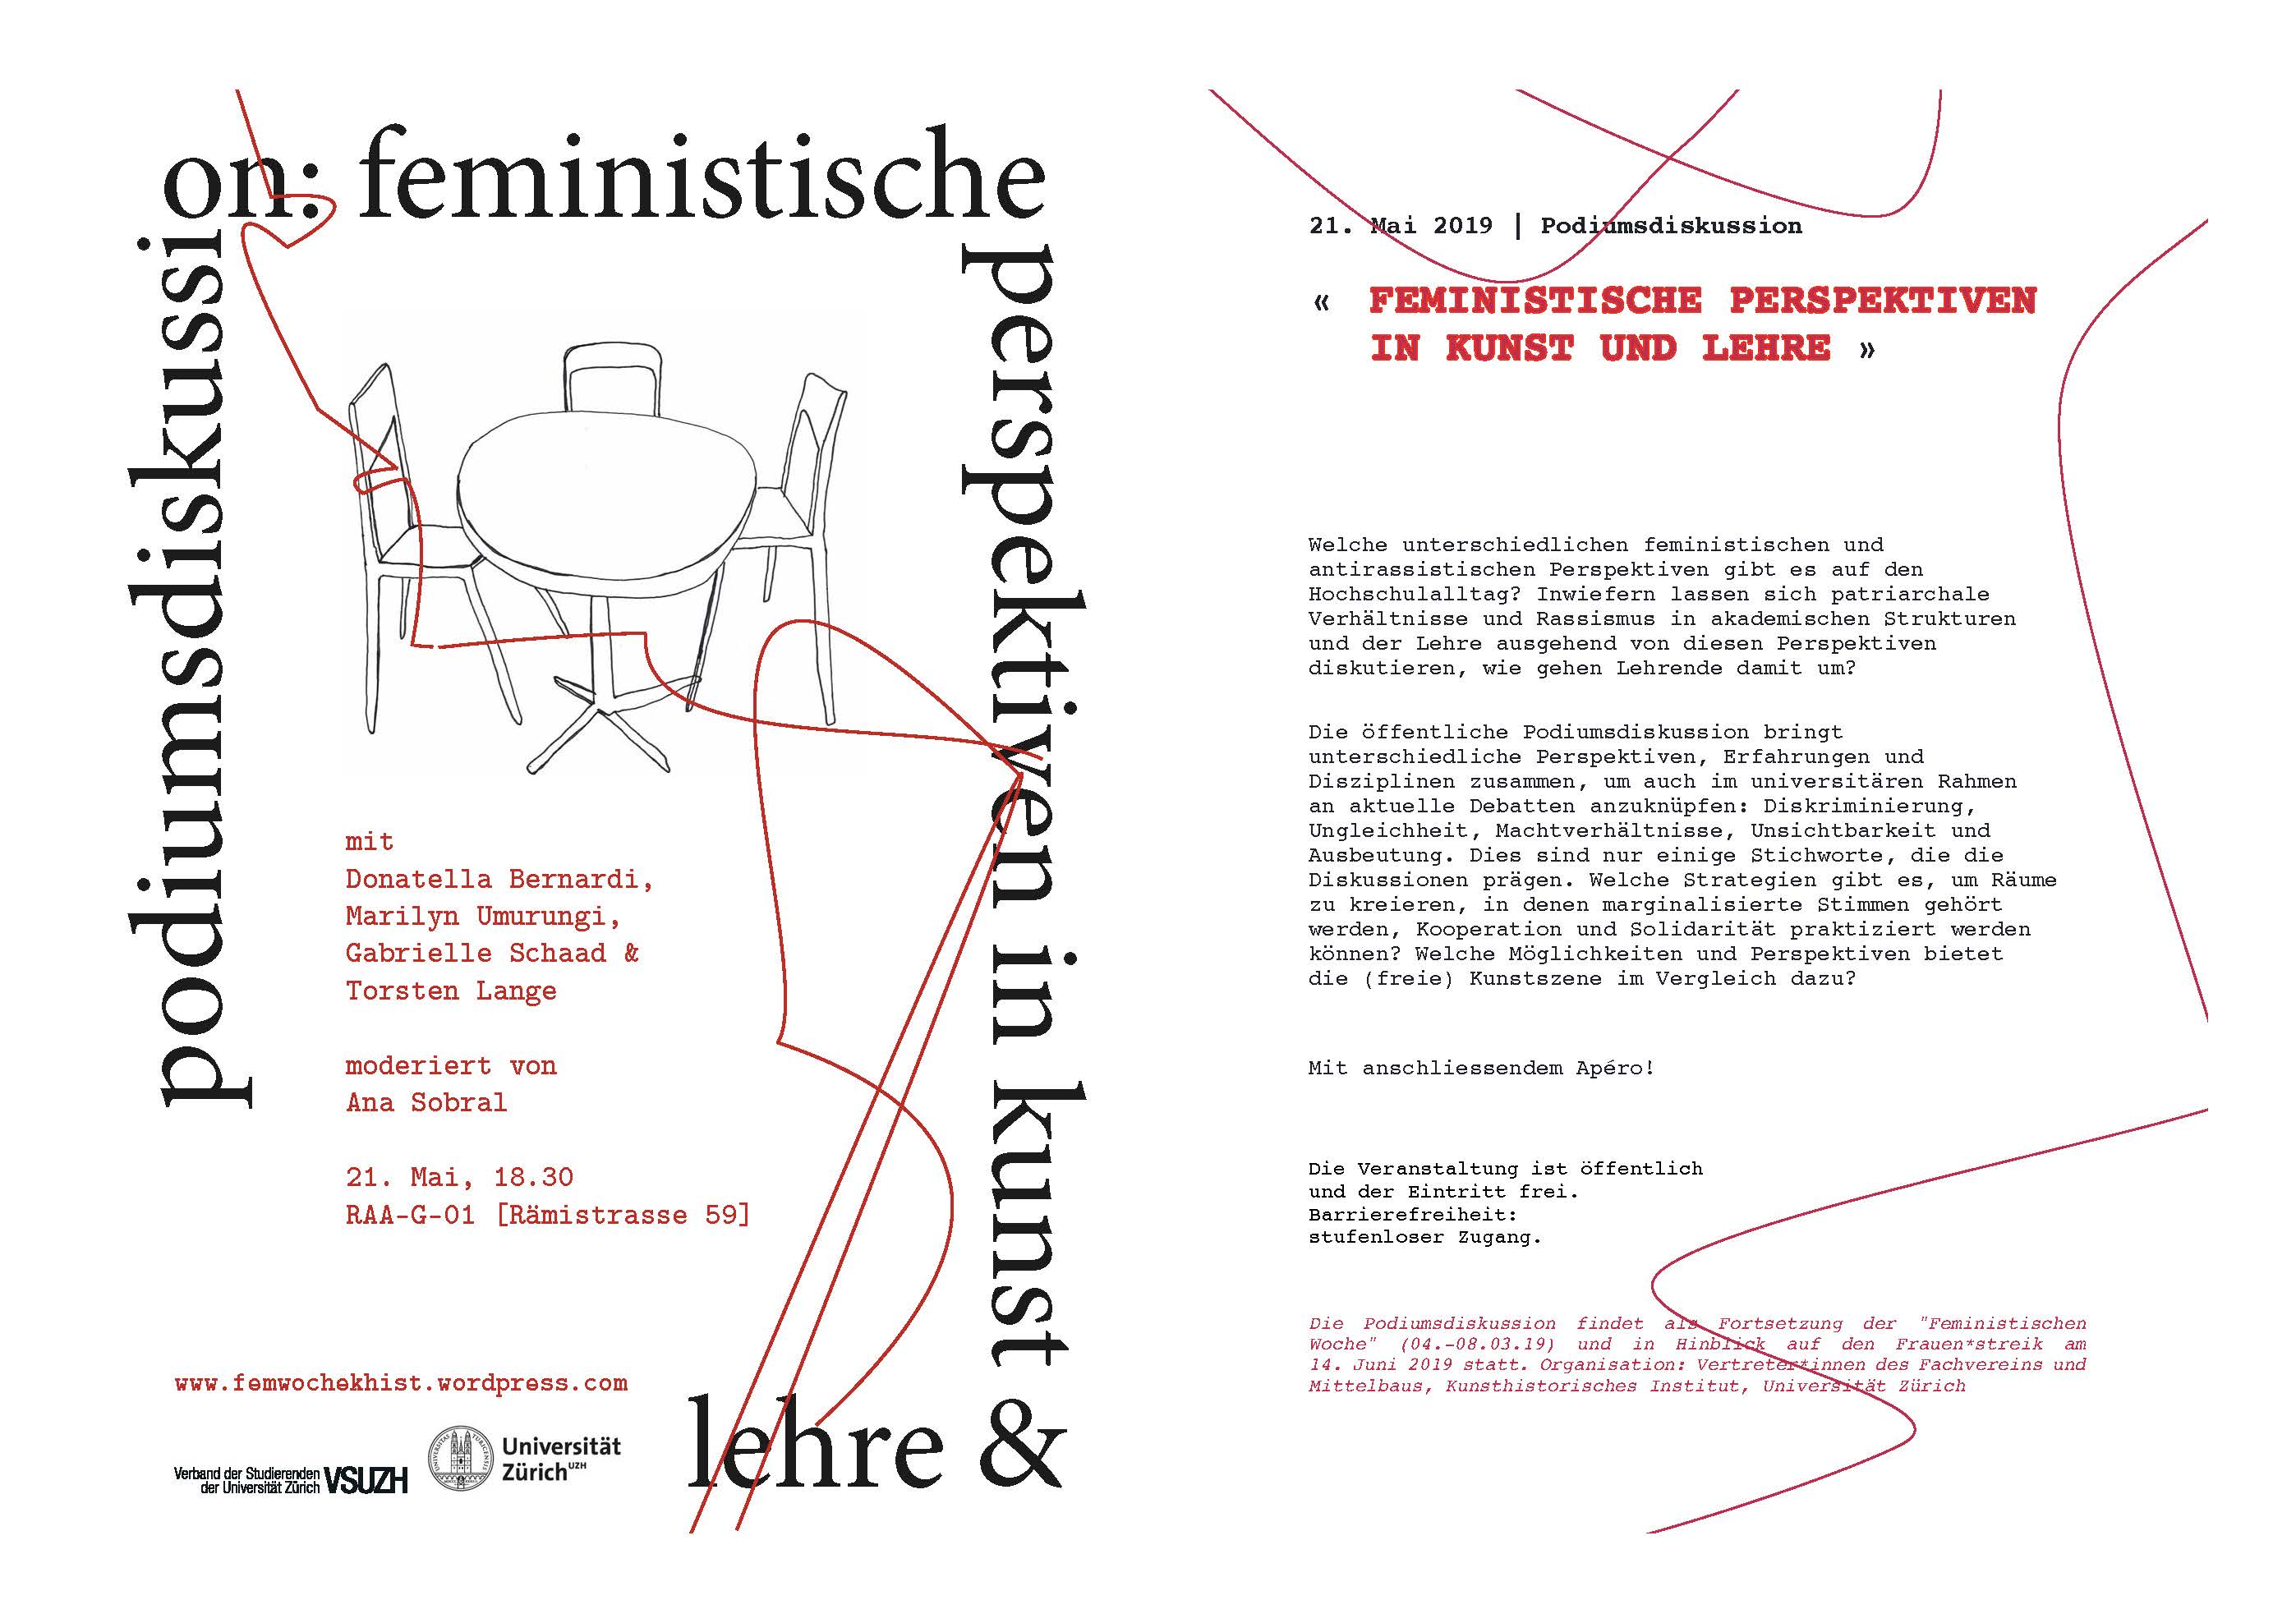 Feministische Perspektiven in Kunst & Lehre